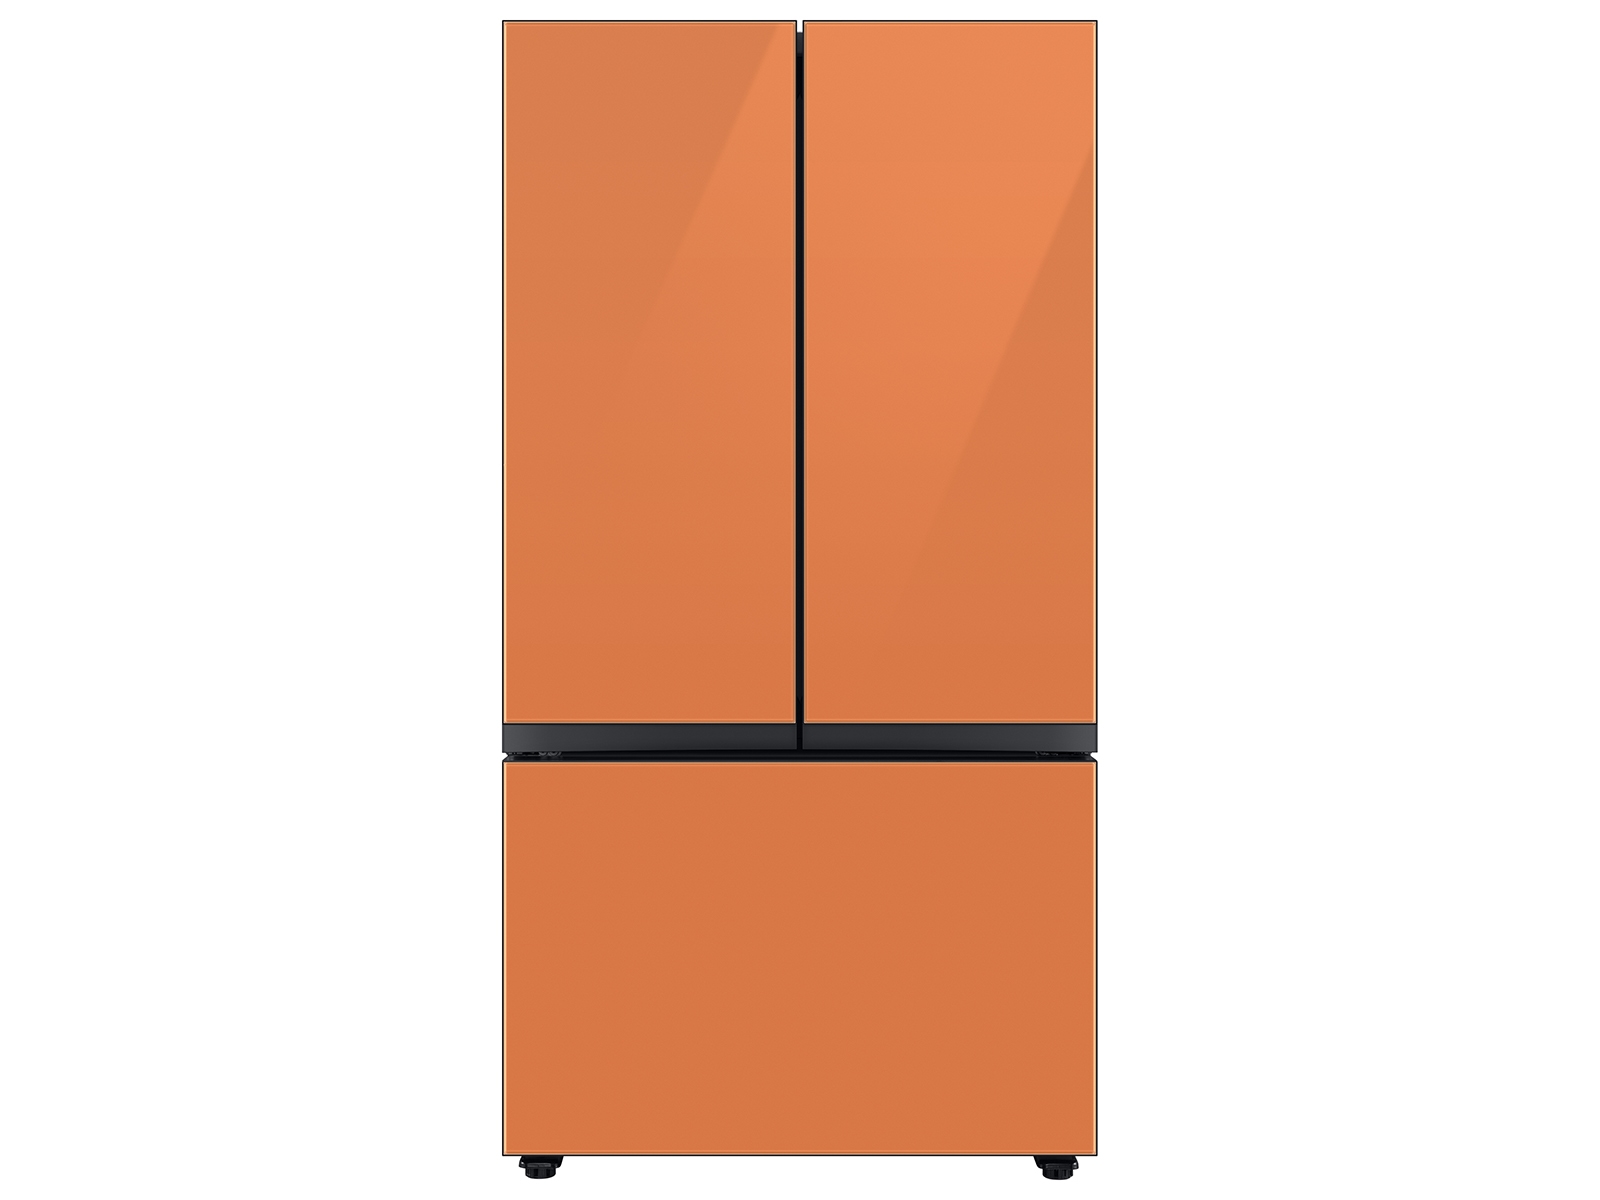 Bespoke 3-Door French Door Refrigerator (24 cu. ft.) with Beverage Center™ in Clementine Glass